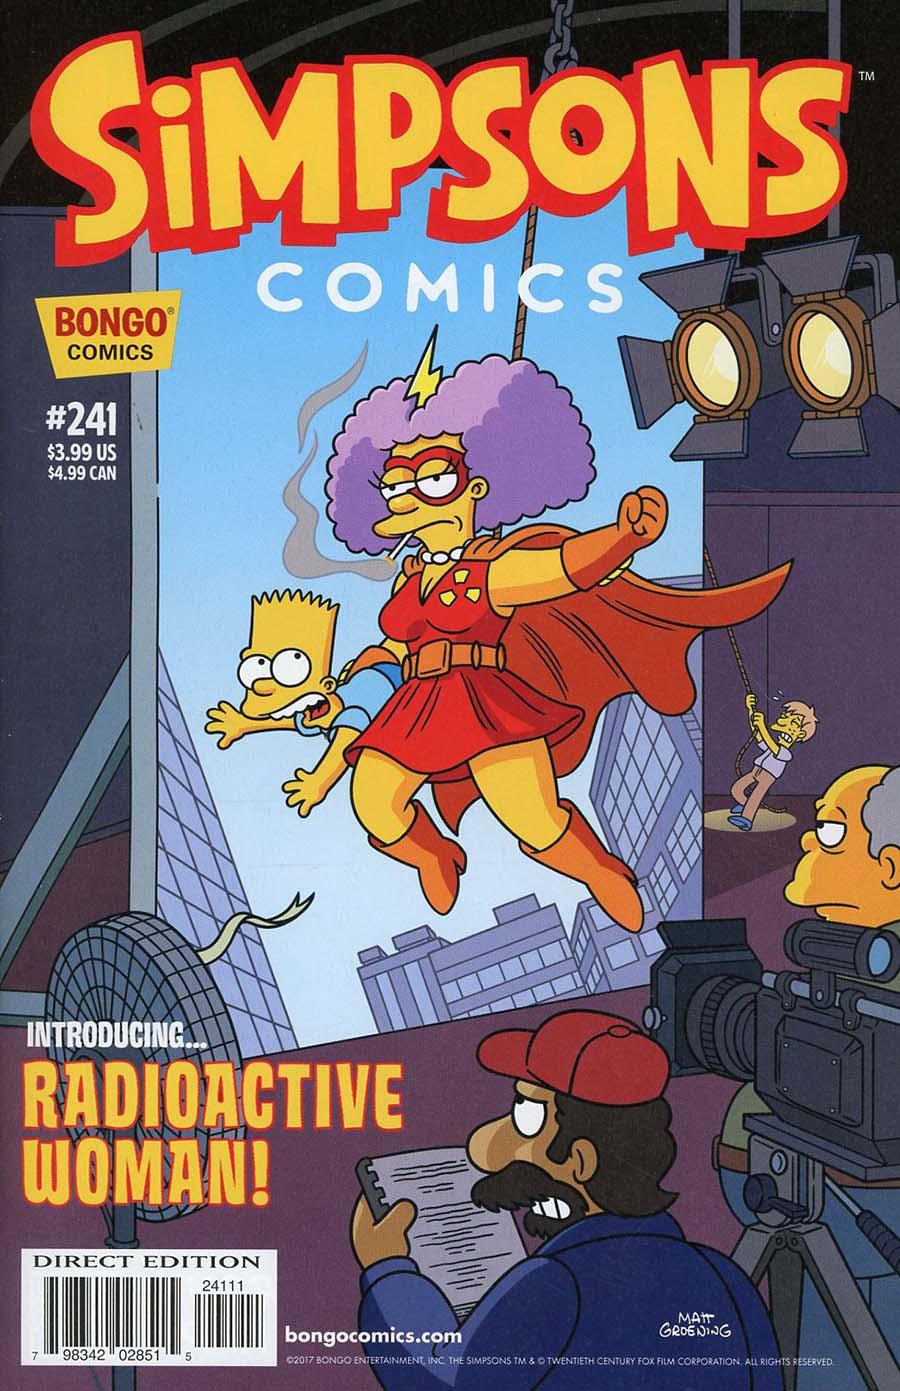 Simpsons Comics Vol. 1 #241